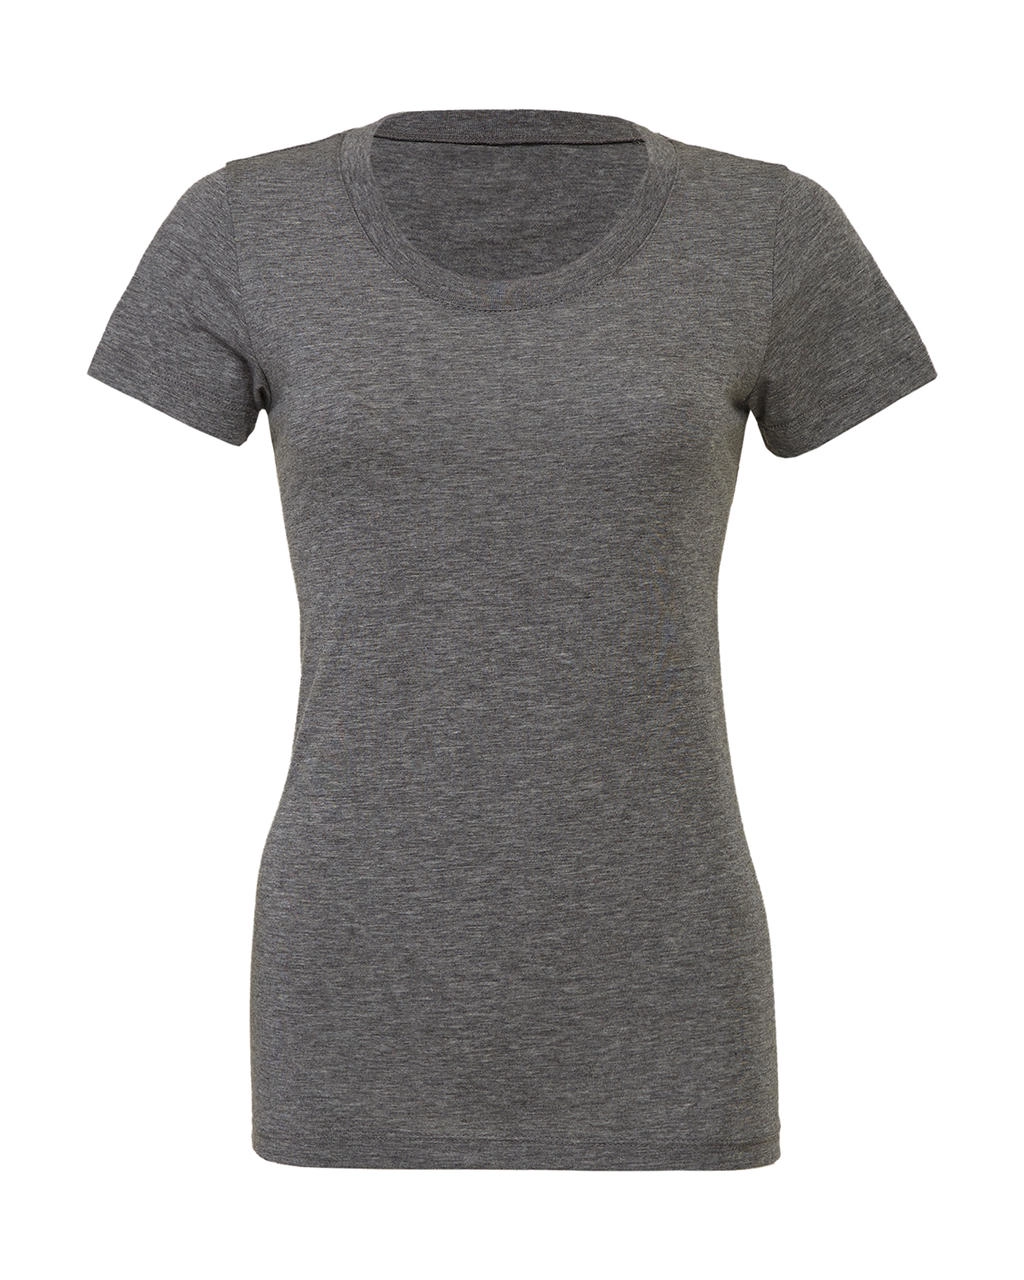 Triblend Crew Neck T-Shirt zum Besticken und Bedrucken in der Farbe Grey Triblend mit Ihren Logo, Schriftzug oder Motiv.